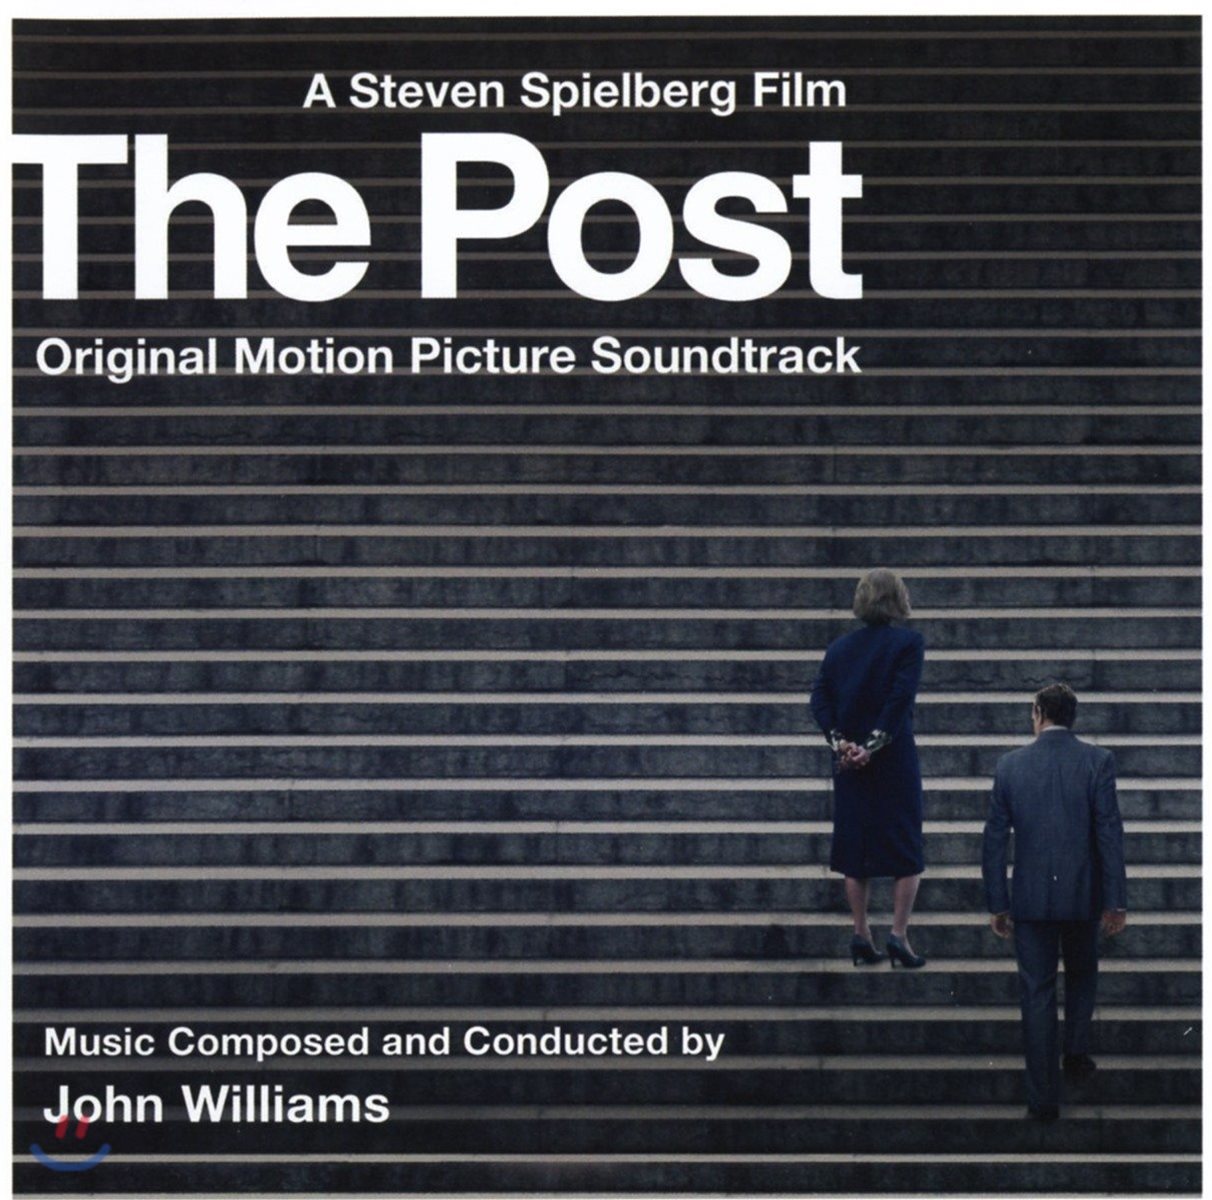 더 포스트 영화음악 (The Post OST by John Williams 존 윌리엄스)